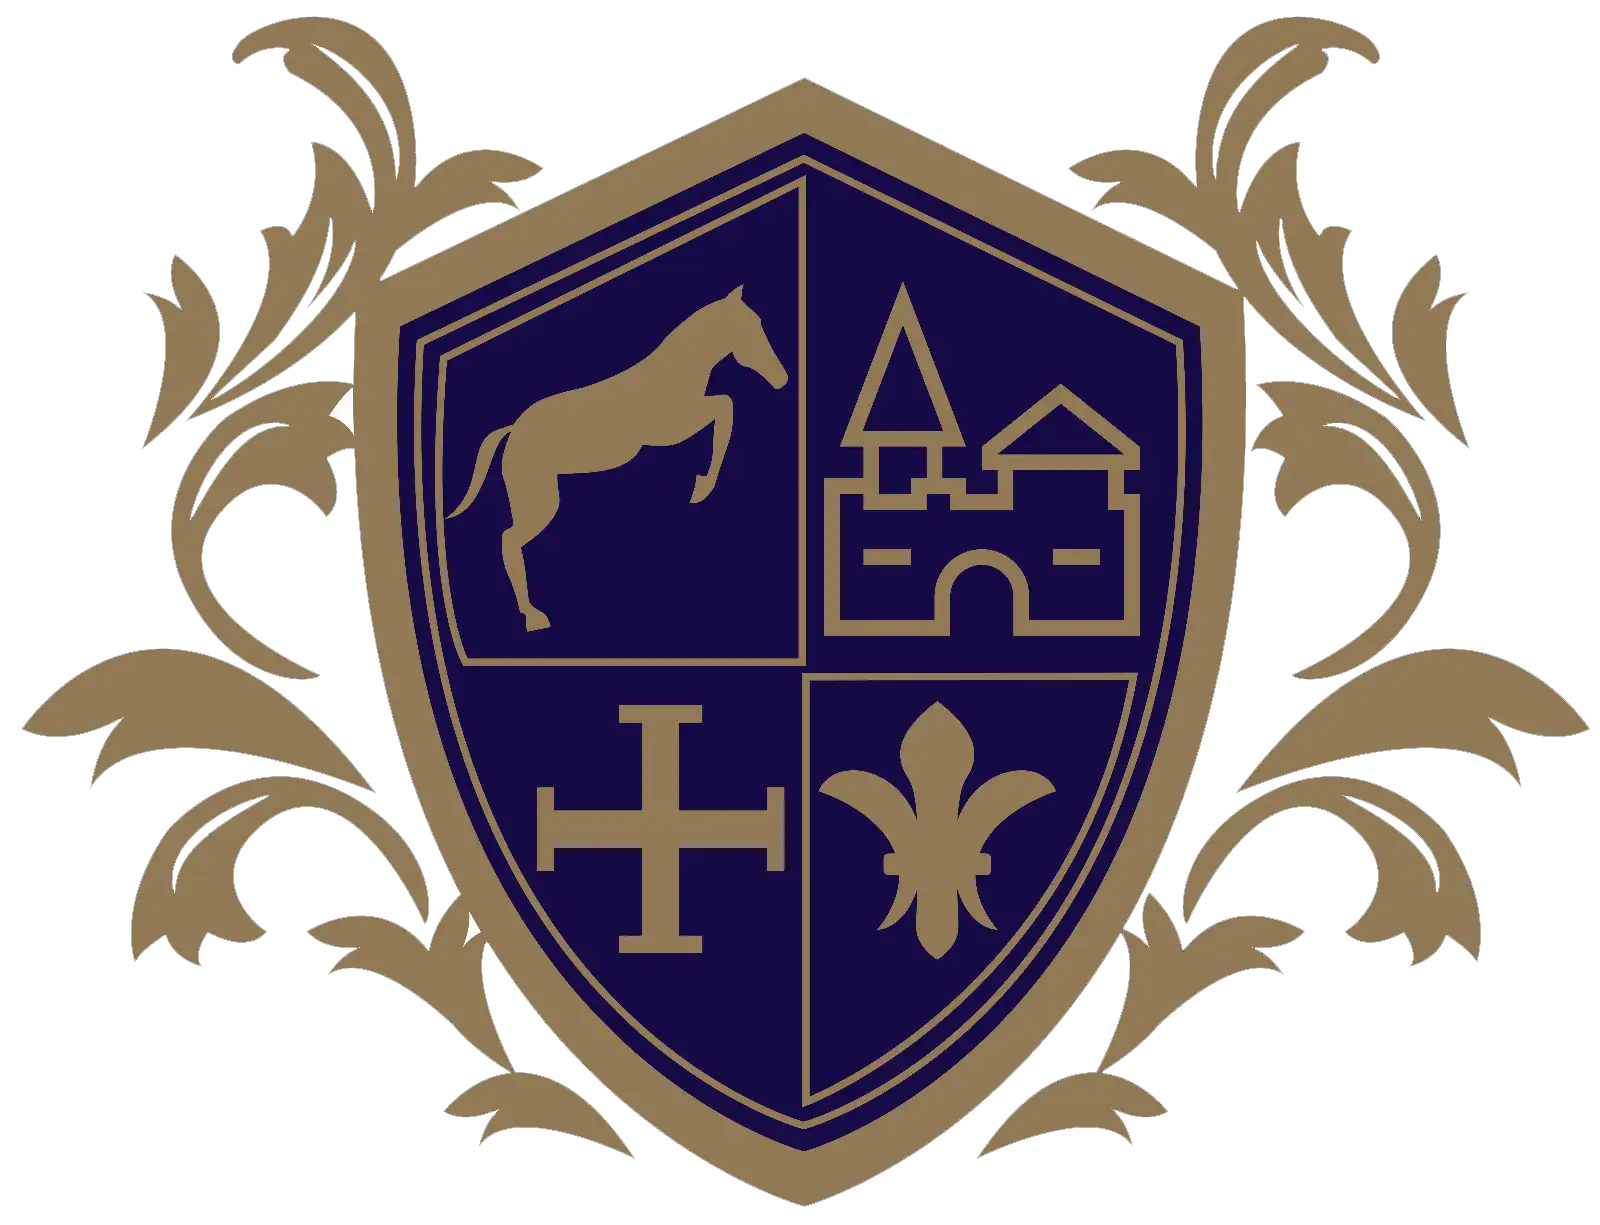 Bestattung franz etl logo